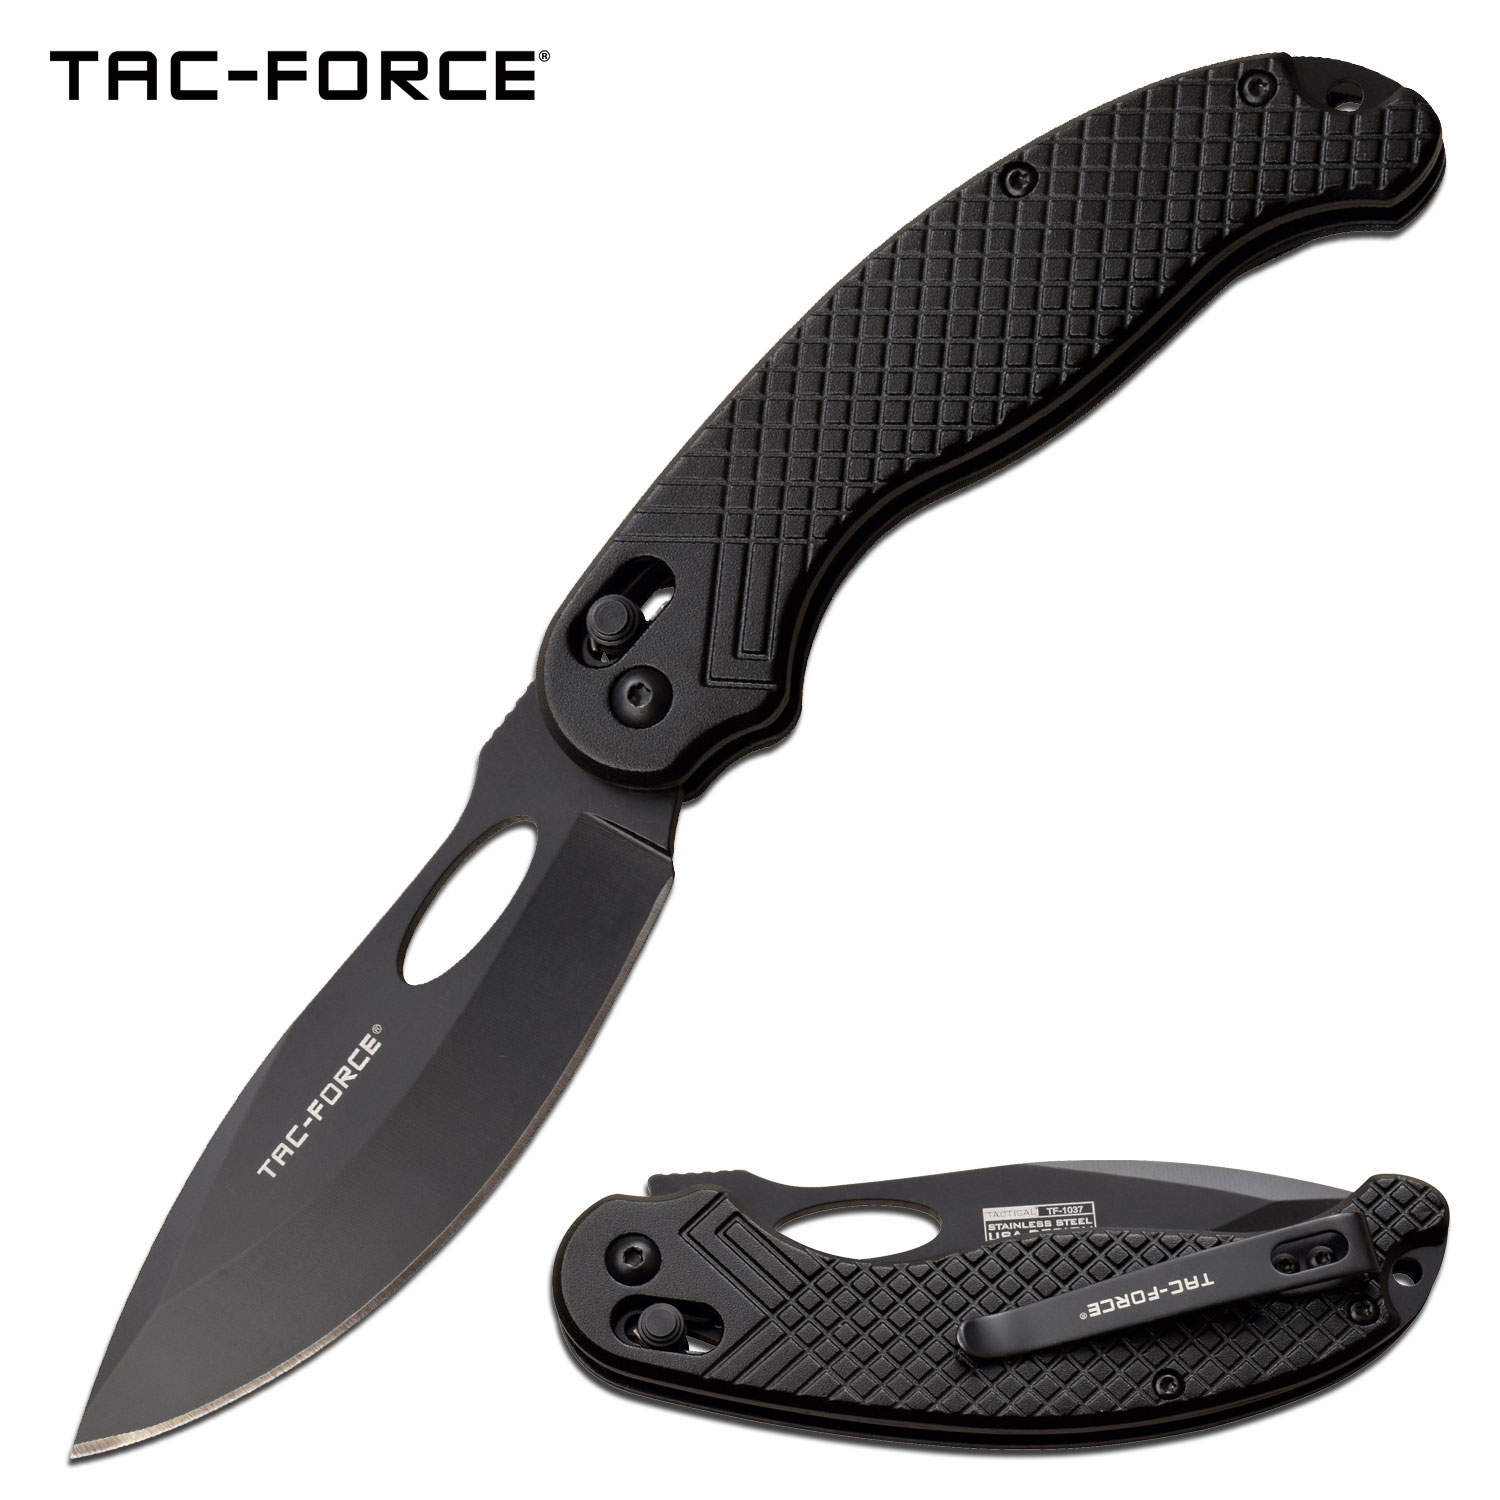 Folding Knife Tac-Force Black Stealth Rapid-Lock Manual Pocket Tactical EDC